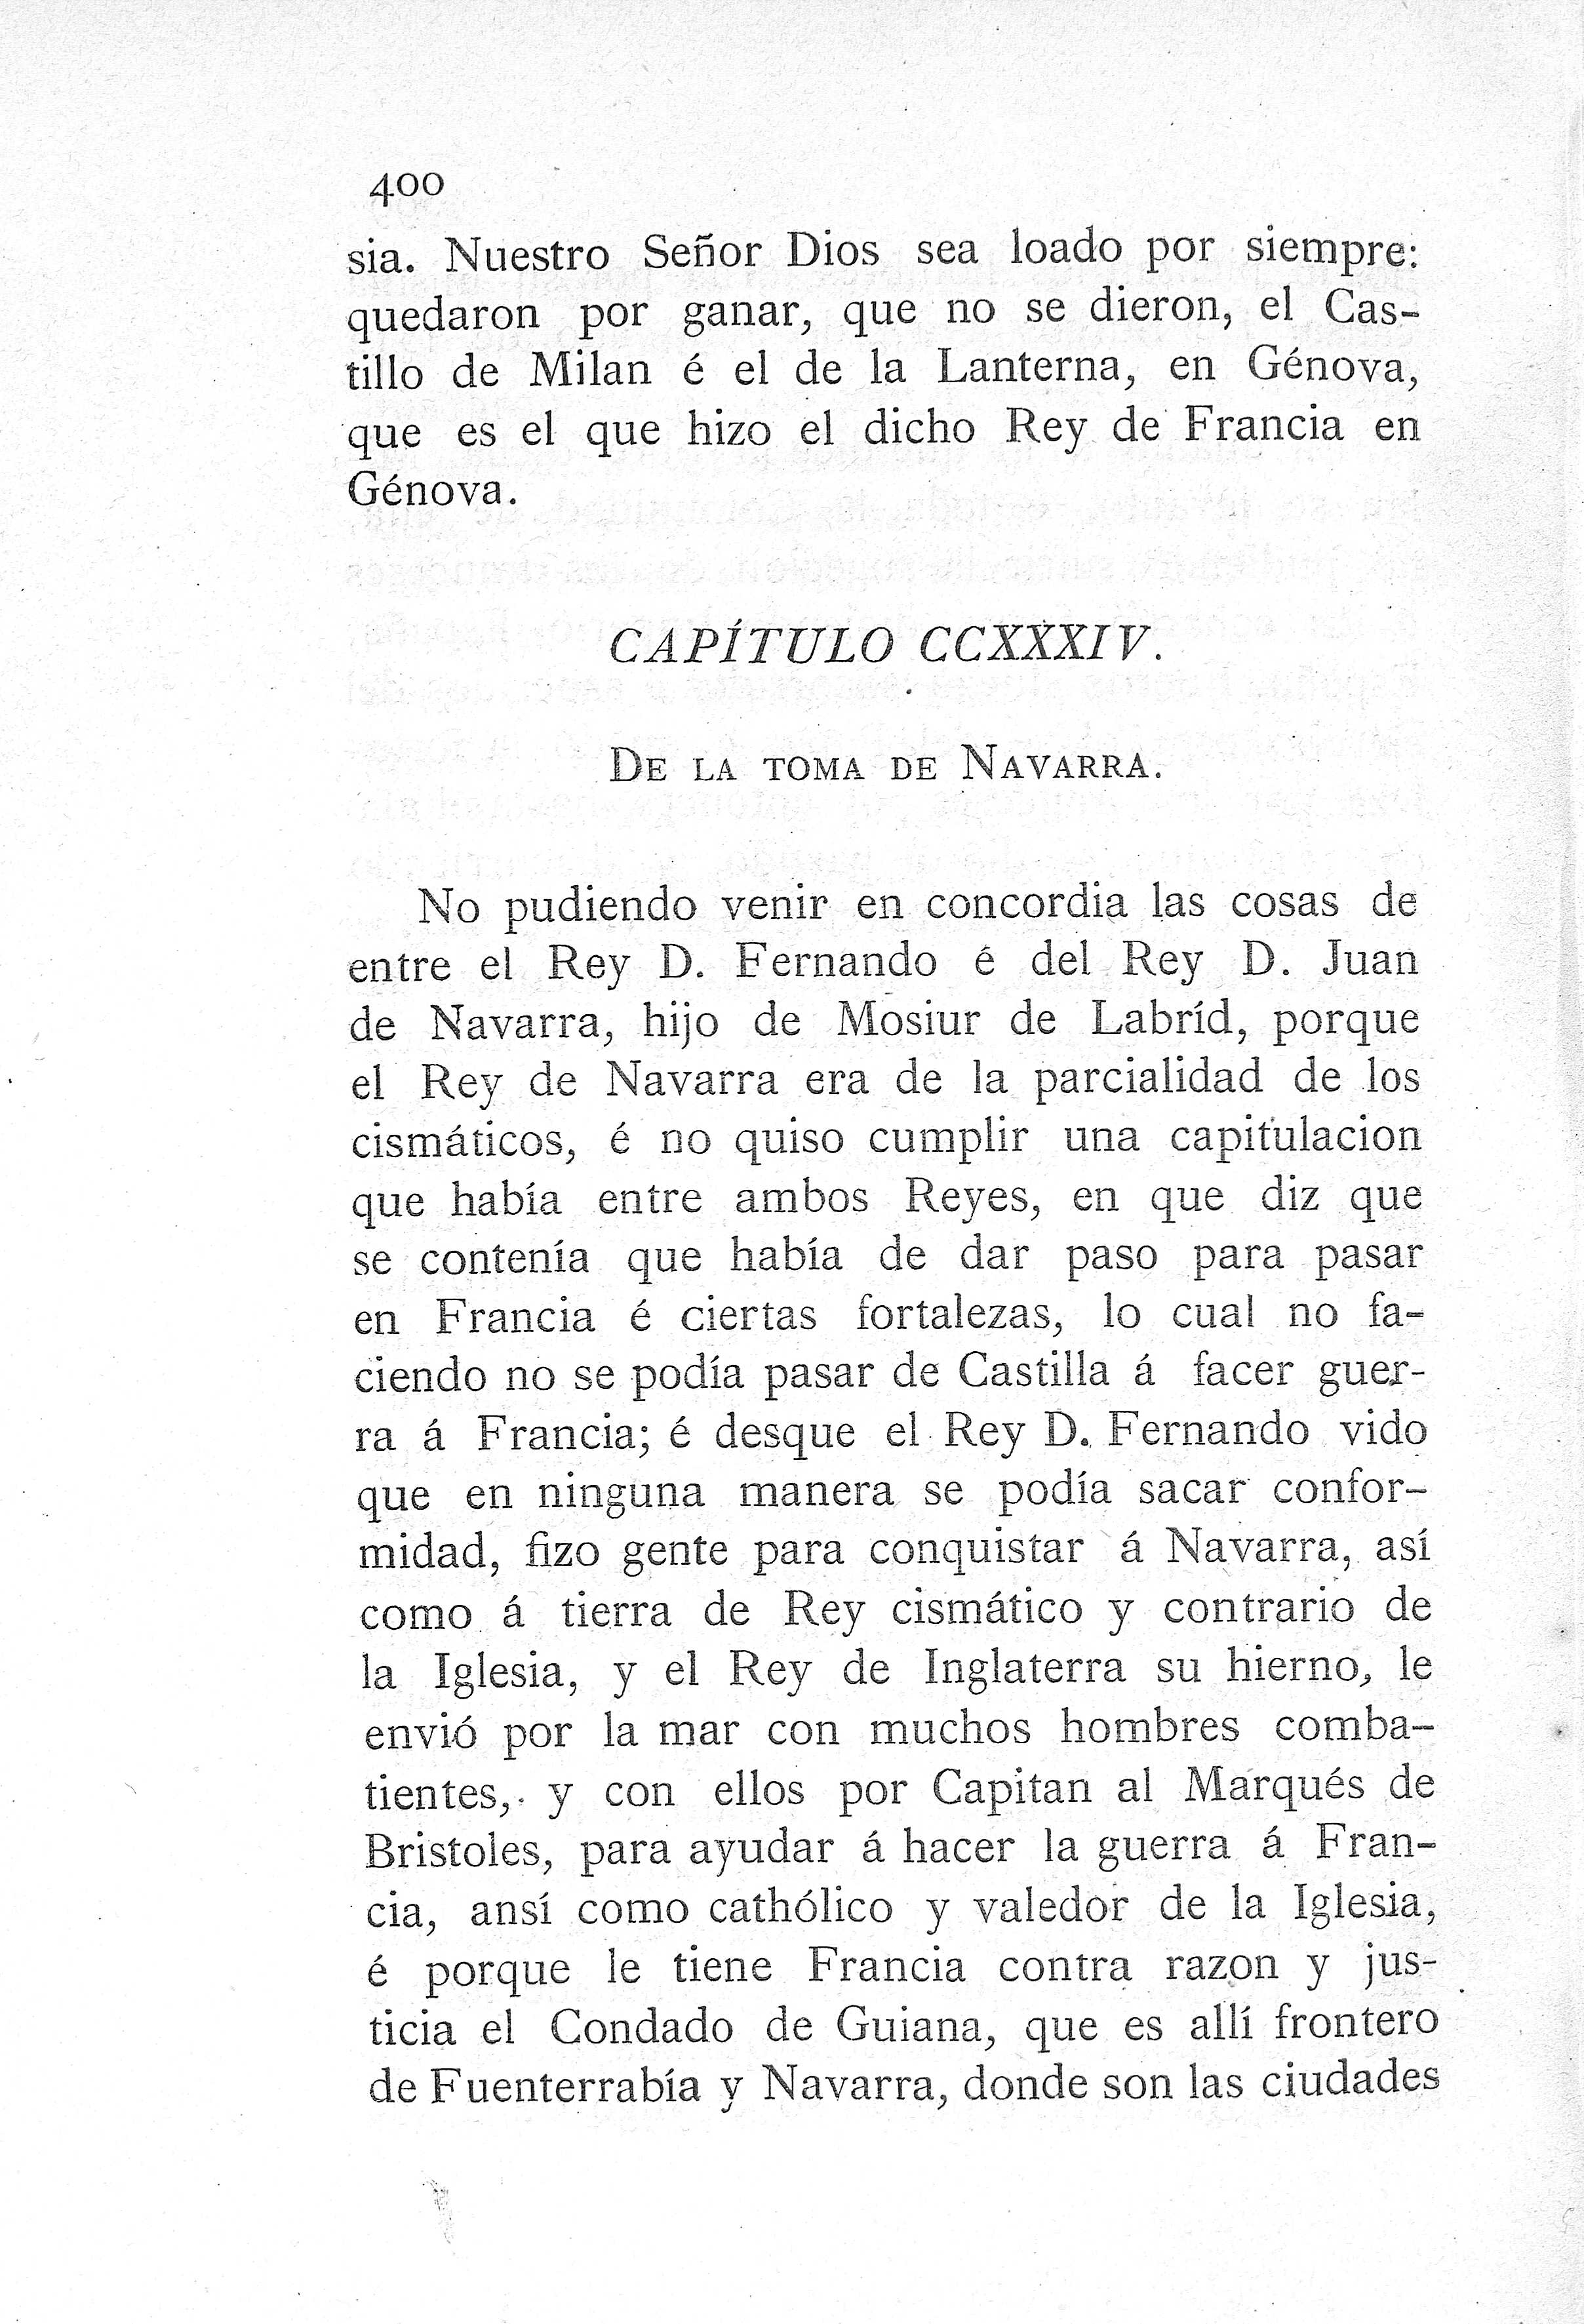 CCXXXIV. de la toma de Navarra